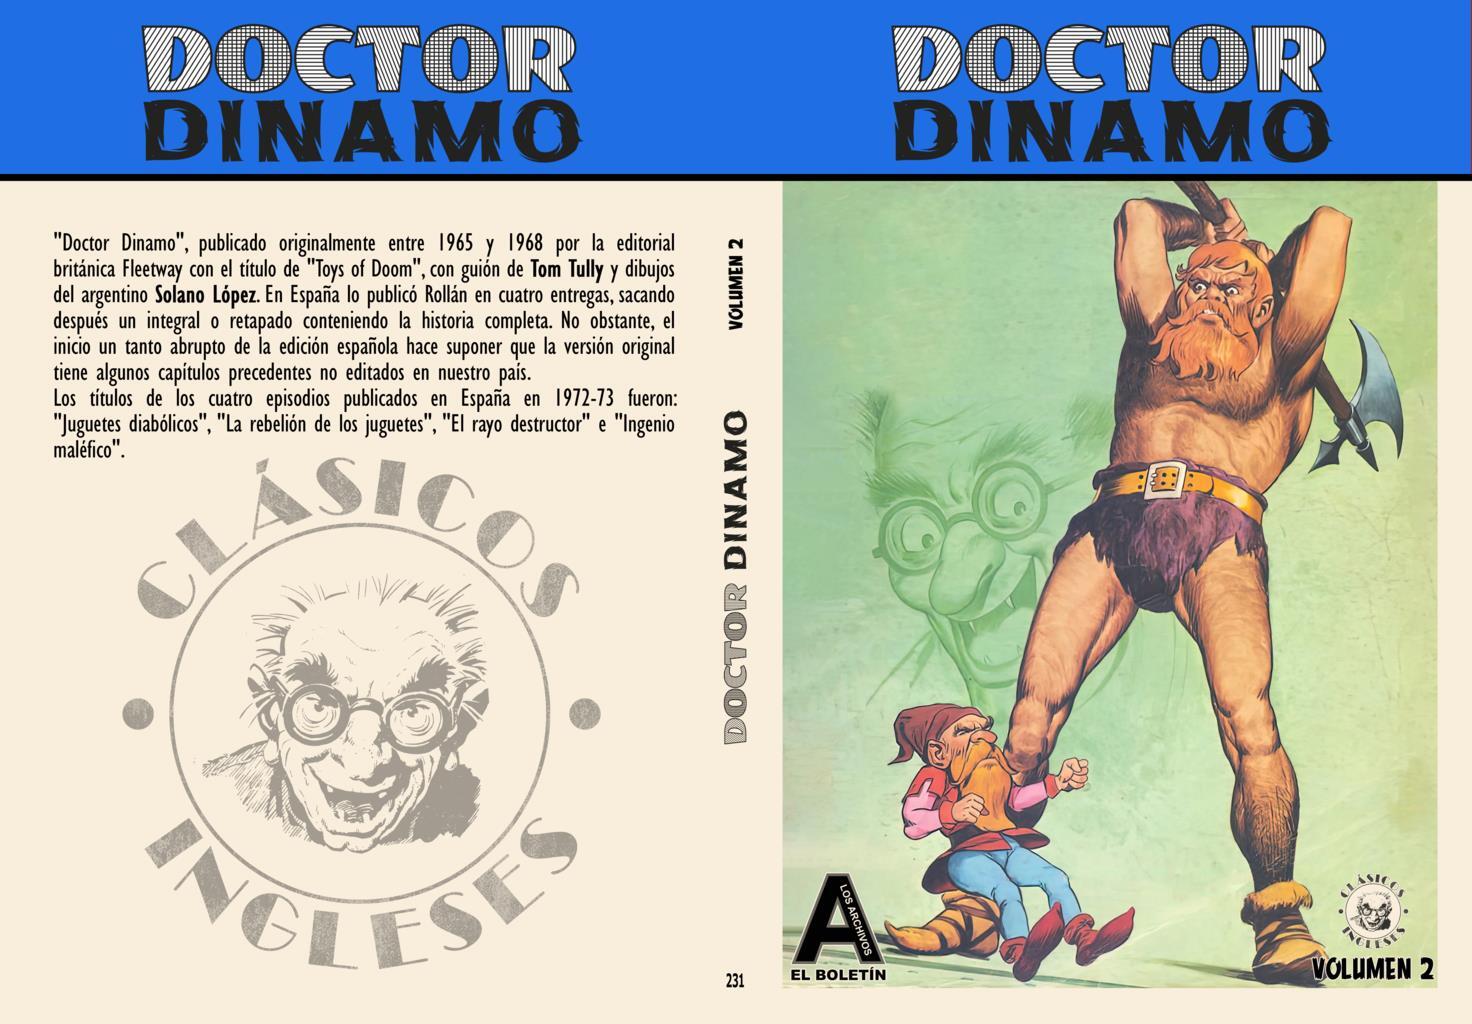 Los Archivos de El Boletin volumen 231: Doctor Dinamo vol 2